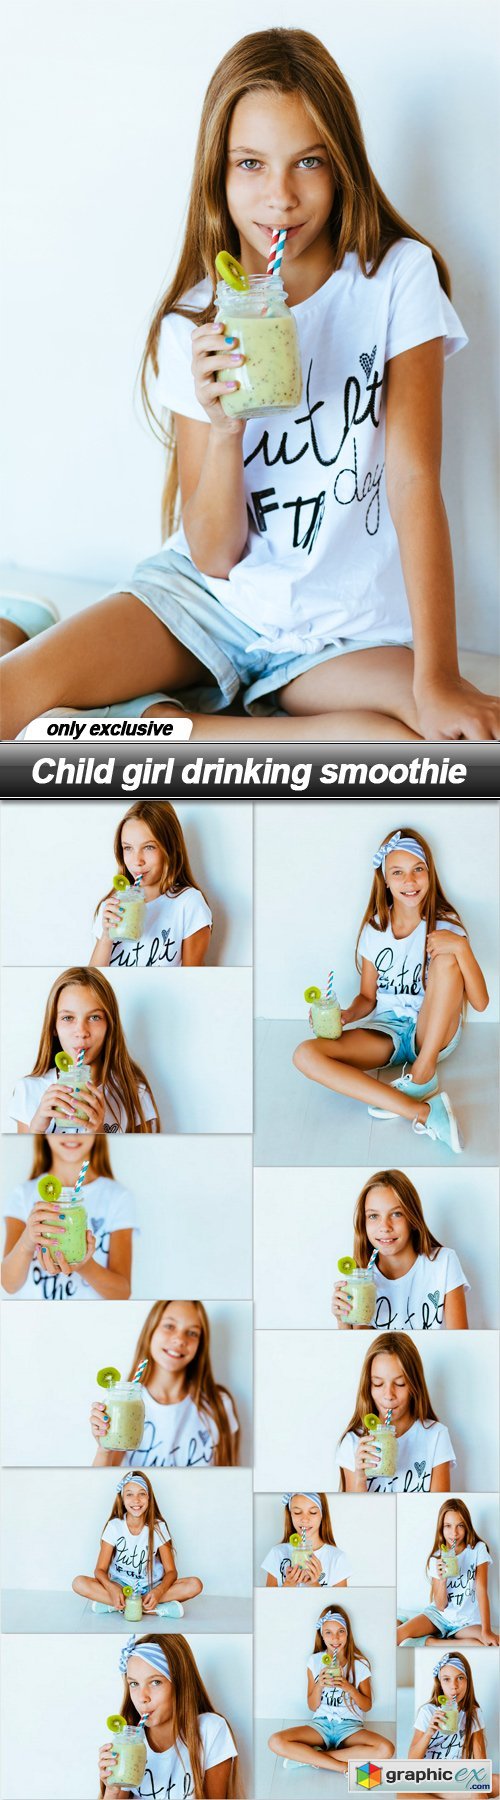 Child girl drinking smoothie - 13 UHQ JPEG